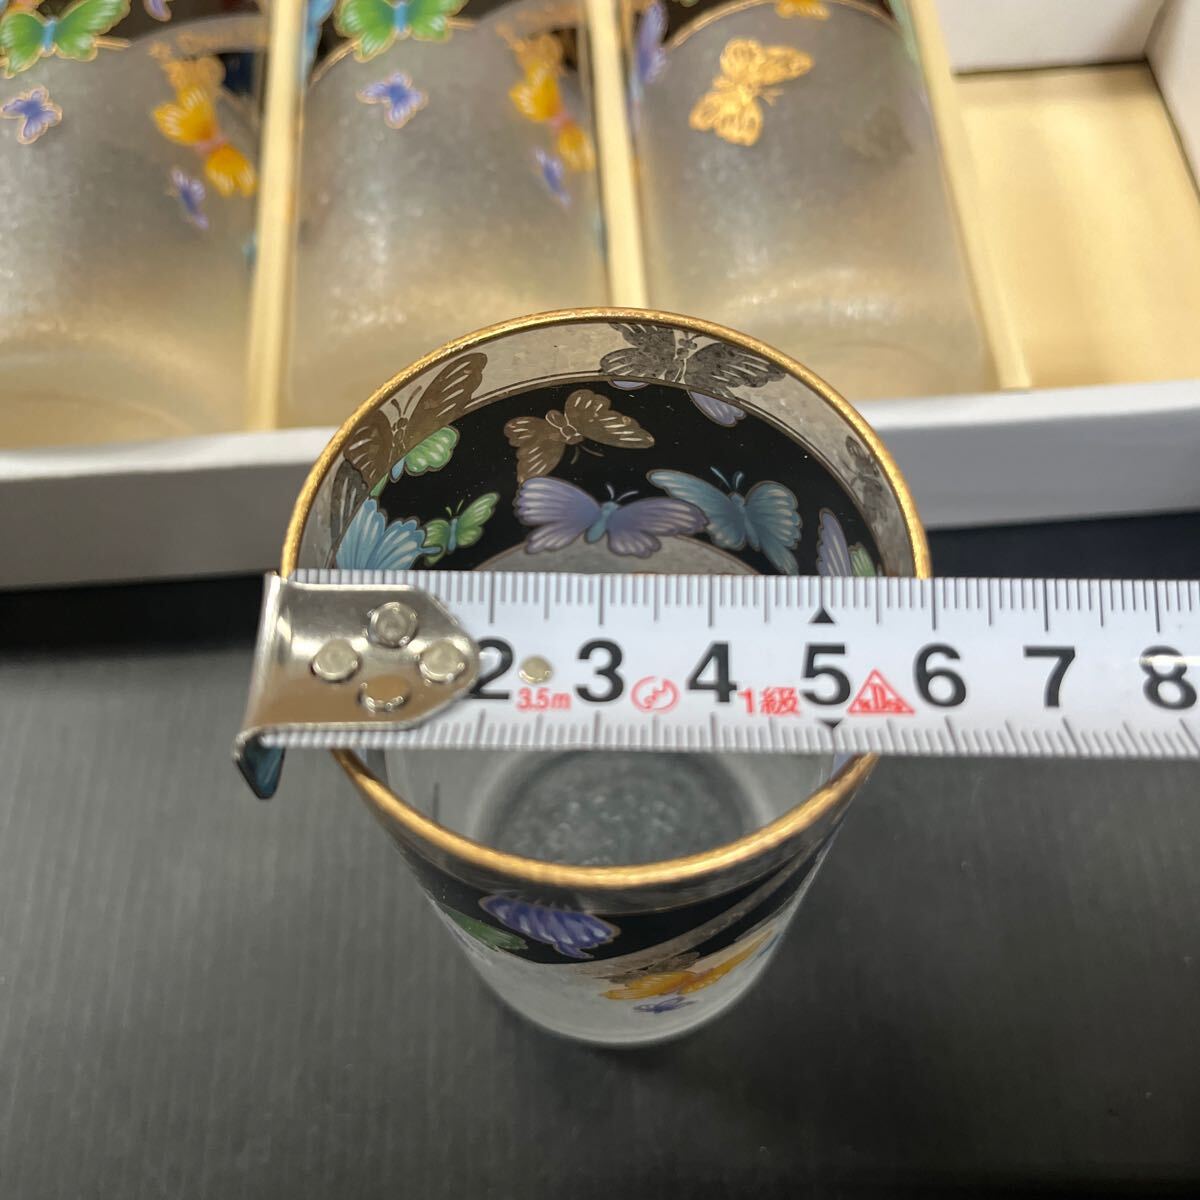 デービッドヒックス タンブラーセット グラス 蝶々 オシャレ 食器 5客 ロンドン イングランド 硝子 未使用品の画像2